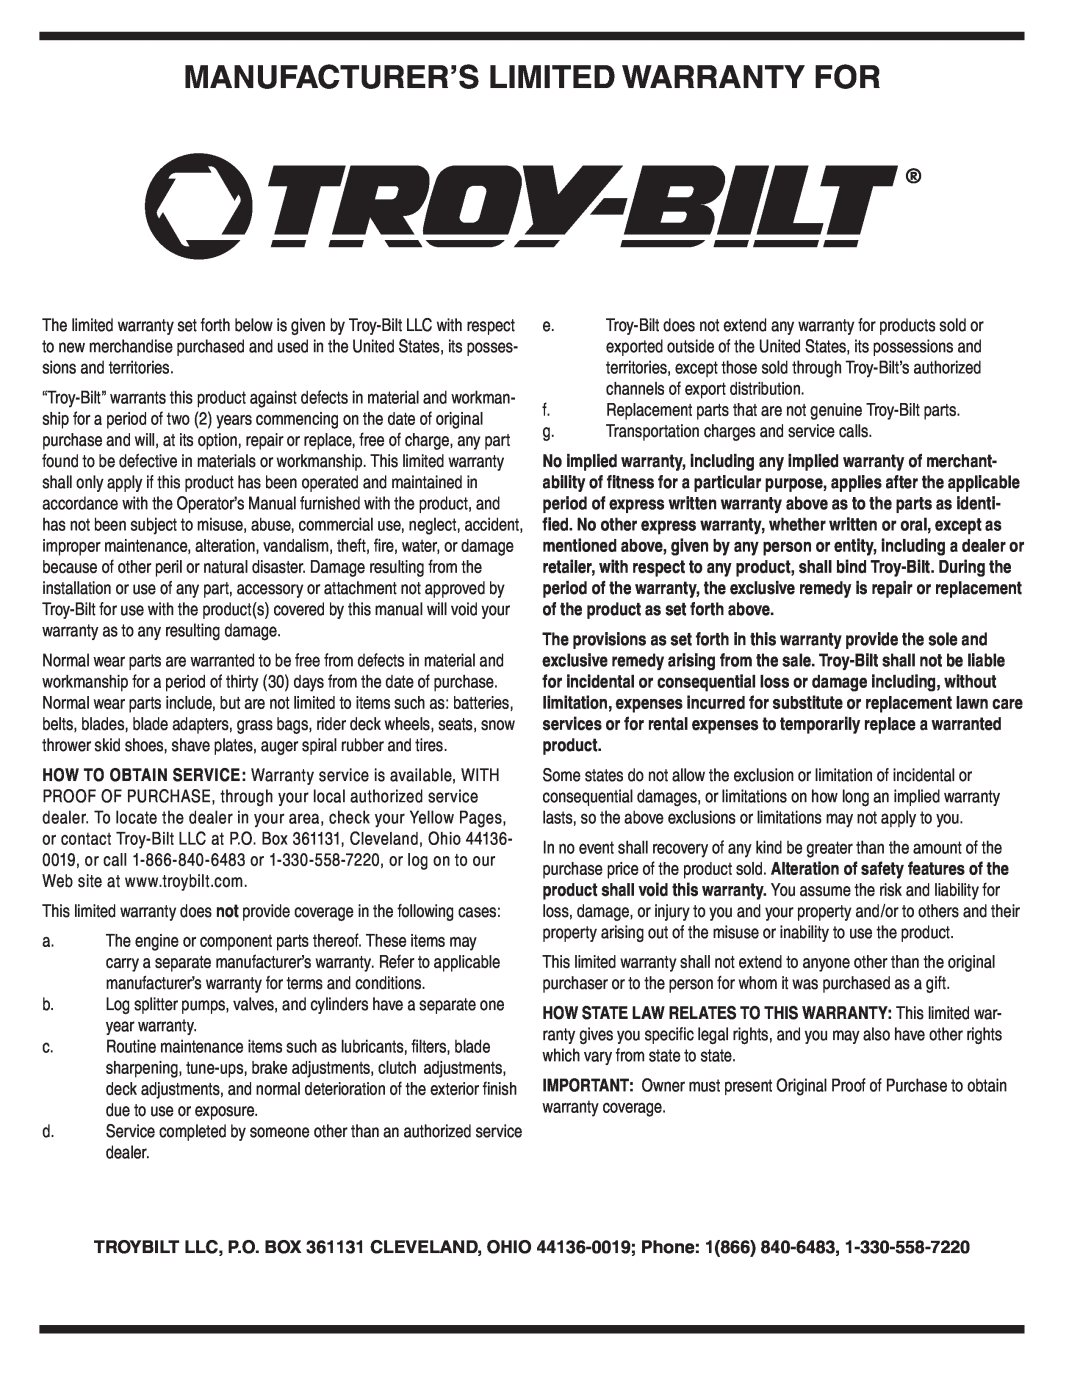 Troy-Bilt 569 warranty Manufacturer’S Limited Warranty For 